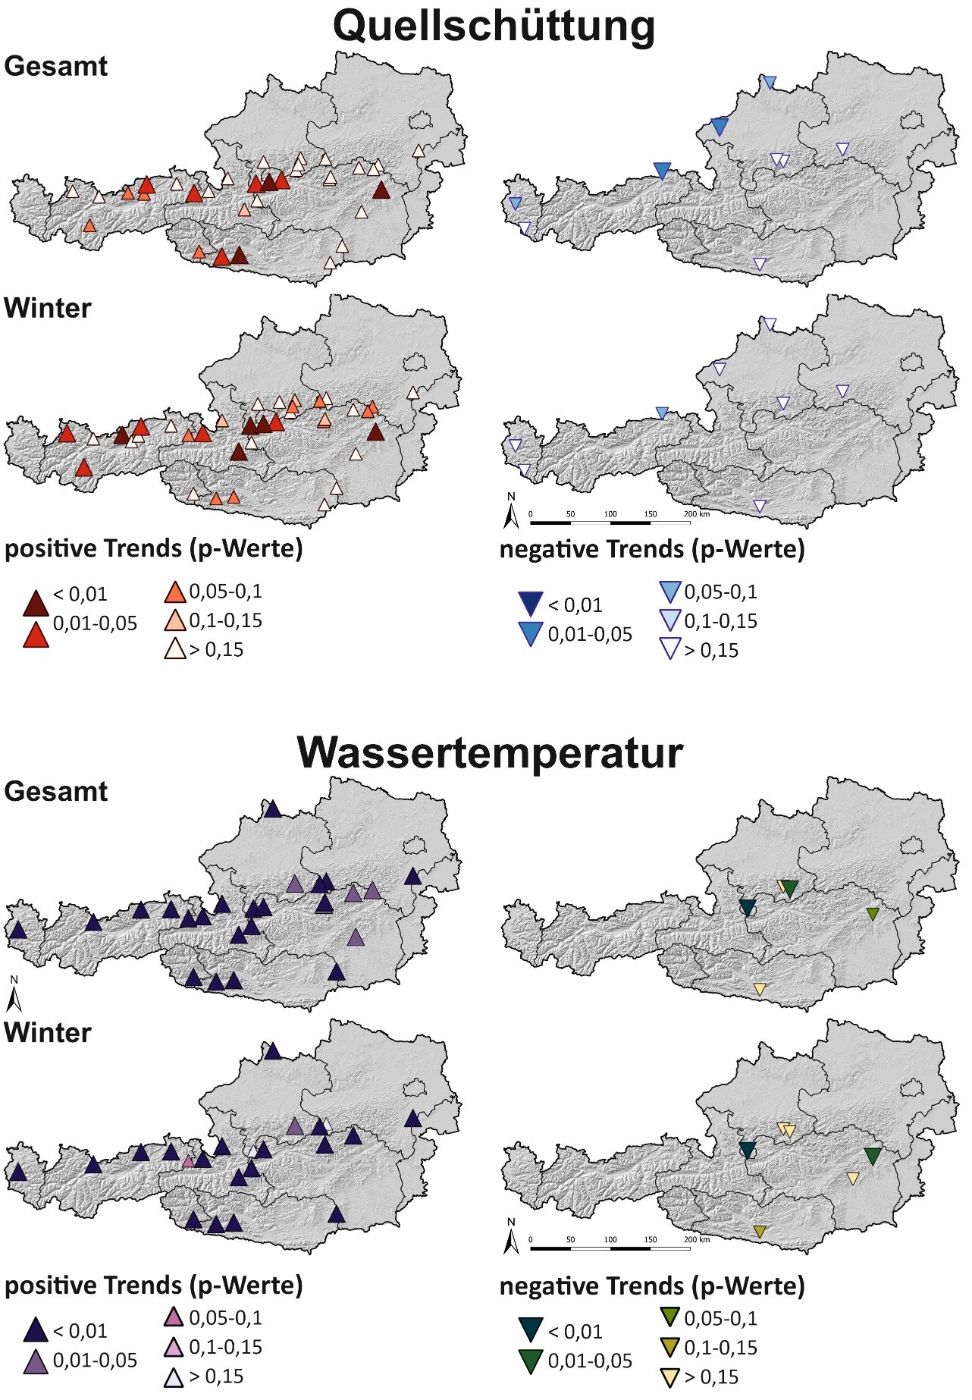 Saisonale Trends der Schüttung und der Wassertemperatur dargestellt in Abhängigkeit der jeweiligen p-Werte, jeweils 1 Karte für das gesamte Jahr und die Wintermonate und positive bzw. negative Änderungen in der Quellschüttung und in der Wassertemperatur. 